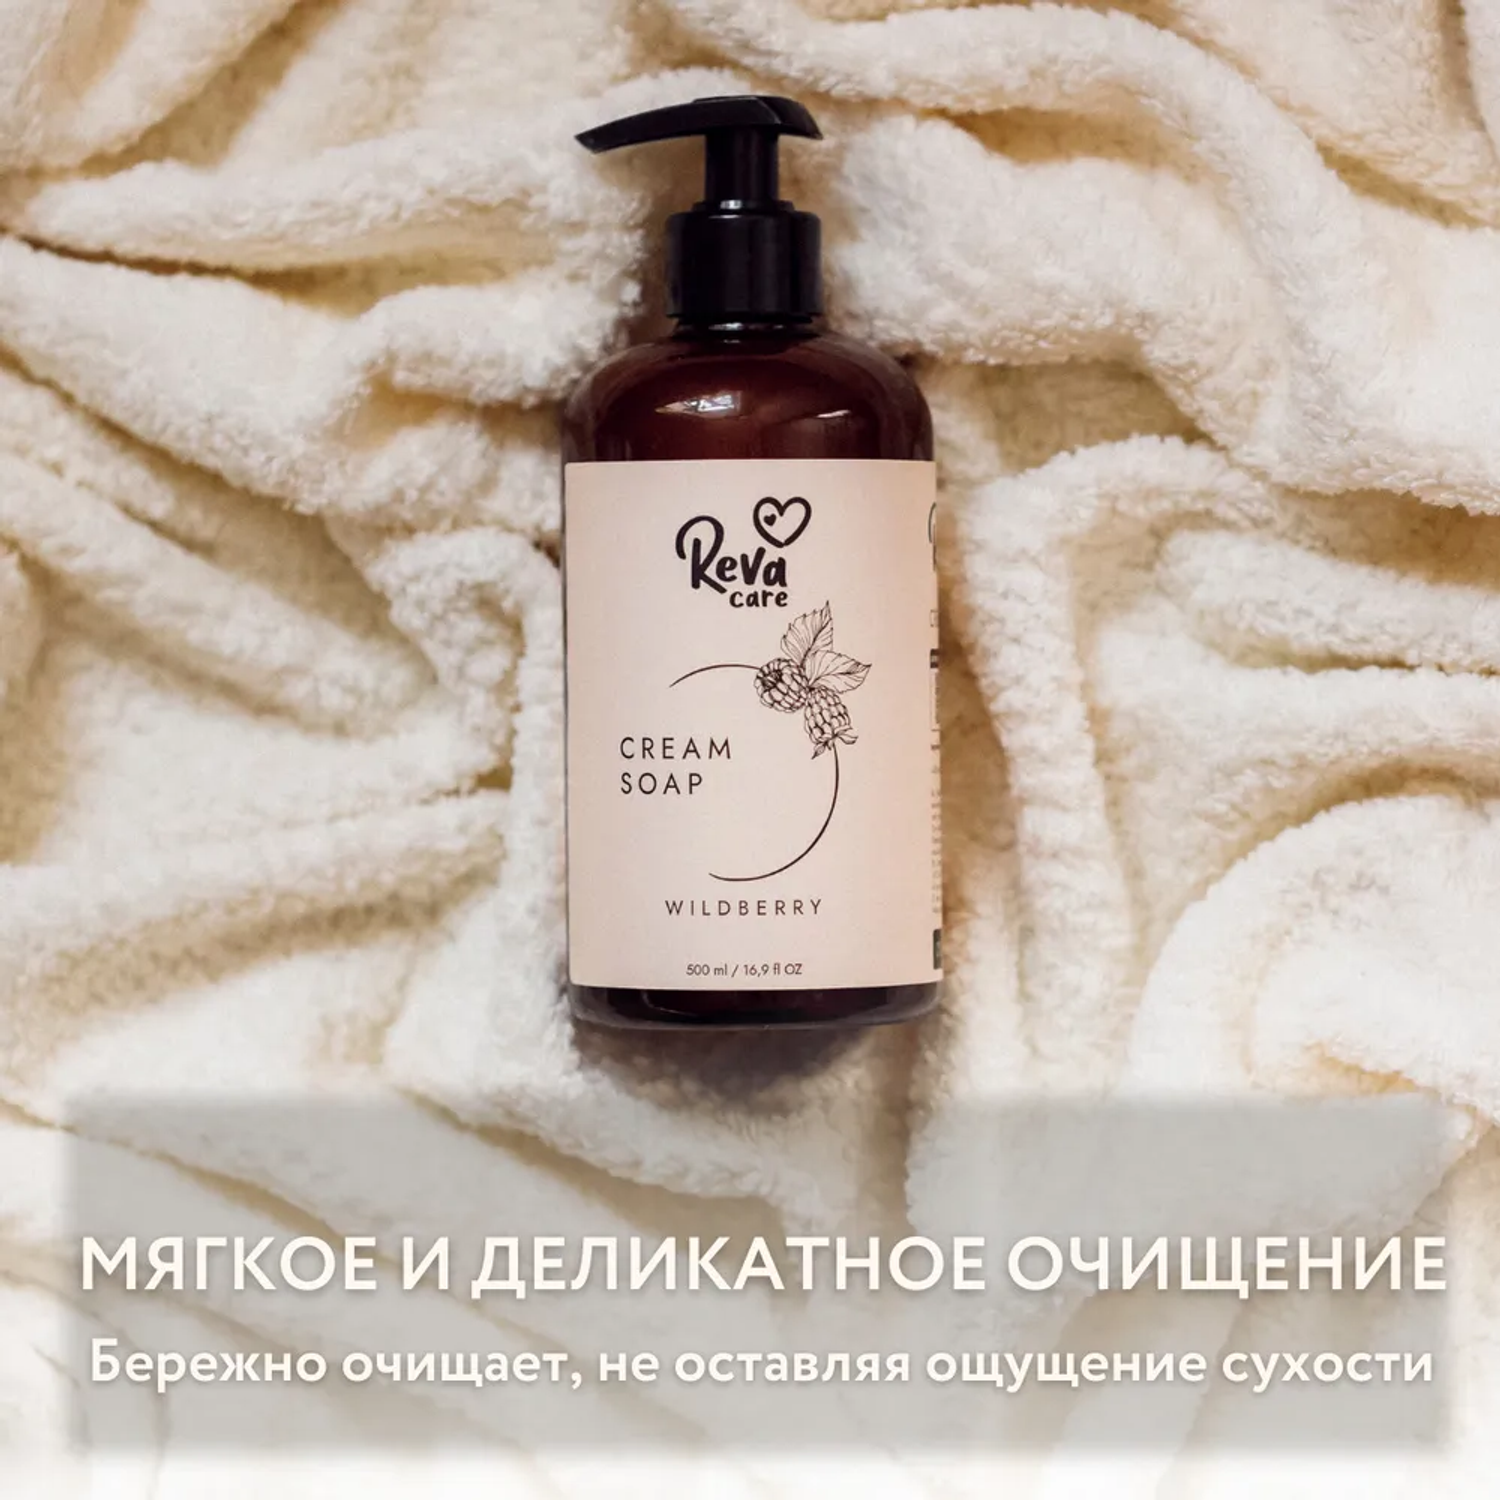 Жидкое мыло Reva Care для рук Cream Soap гипоаллергенное густое мягкое с ароматом ежевики 500 мл - фото 5